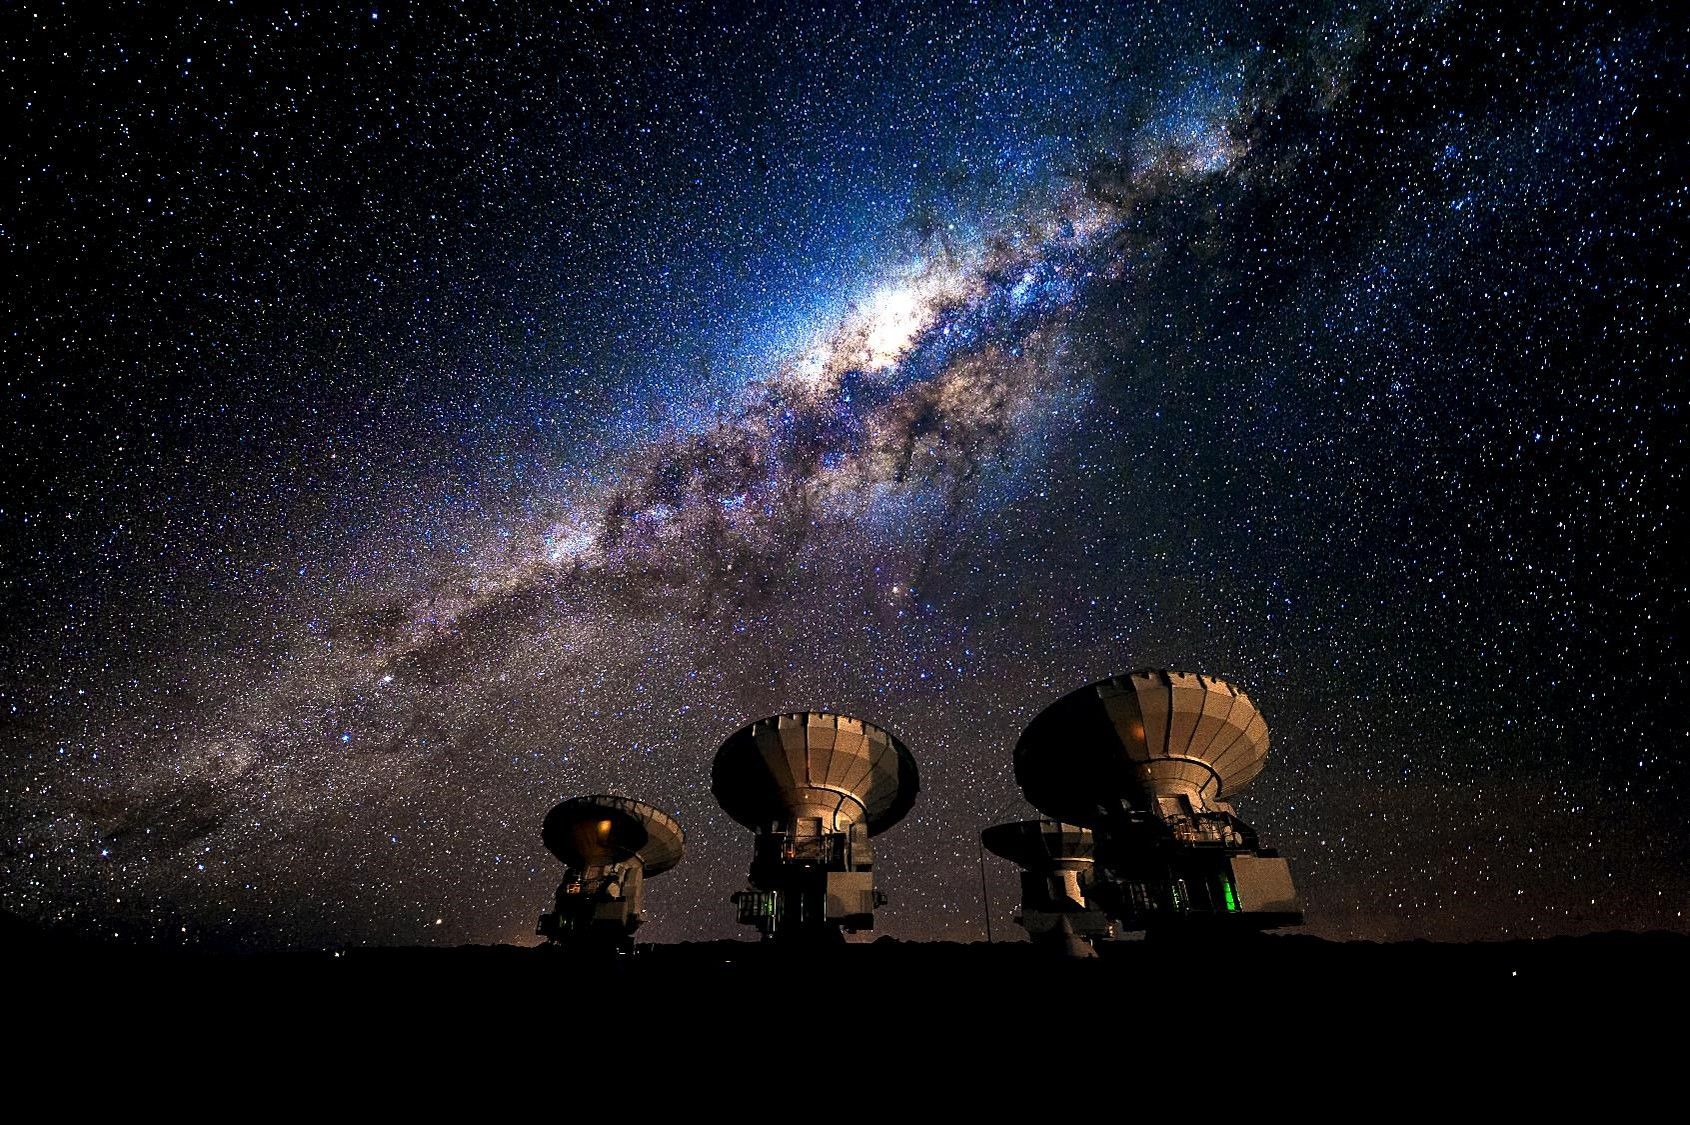 ブラックホール撮影を成功に導いた日本人の「魂」　南米チリの「アルマ」望遠鏡にかけた、ある日本人天文学者の物語